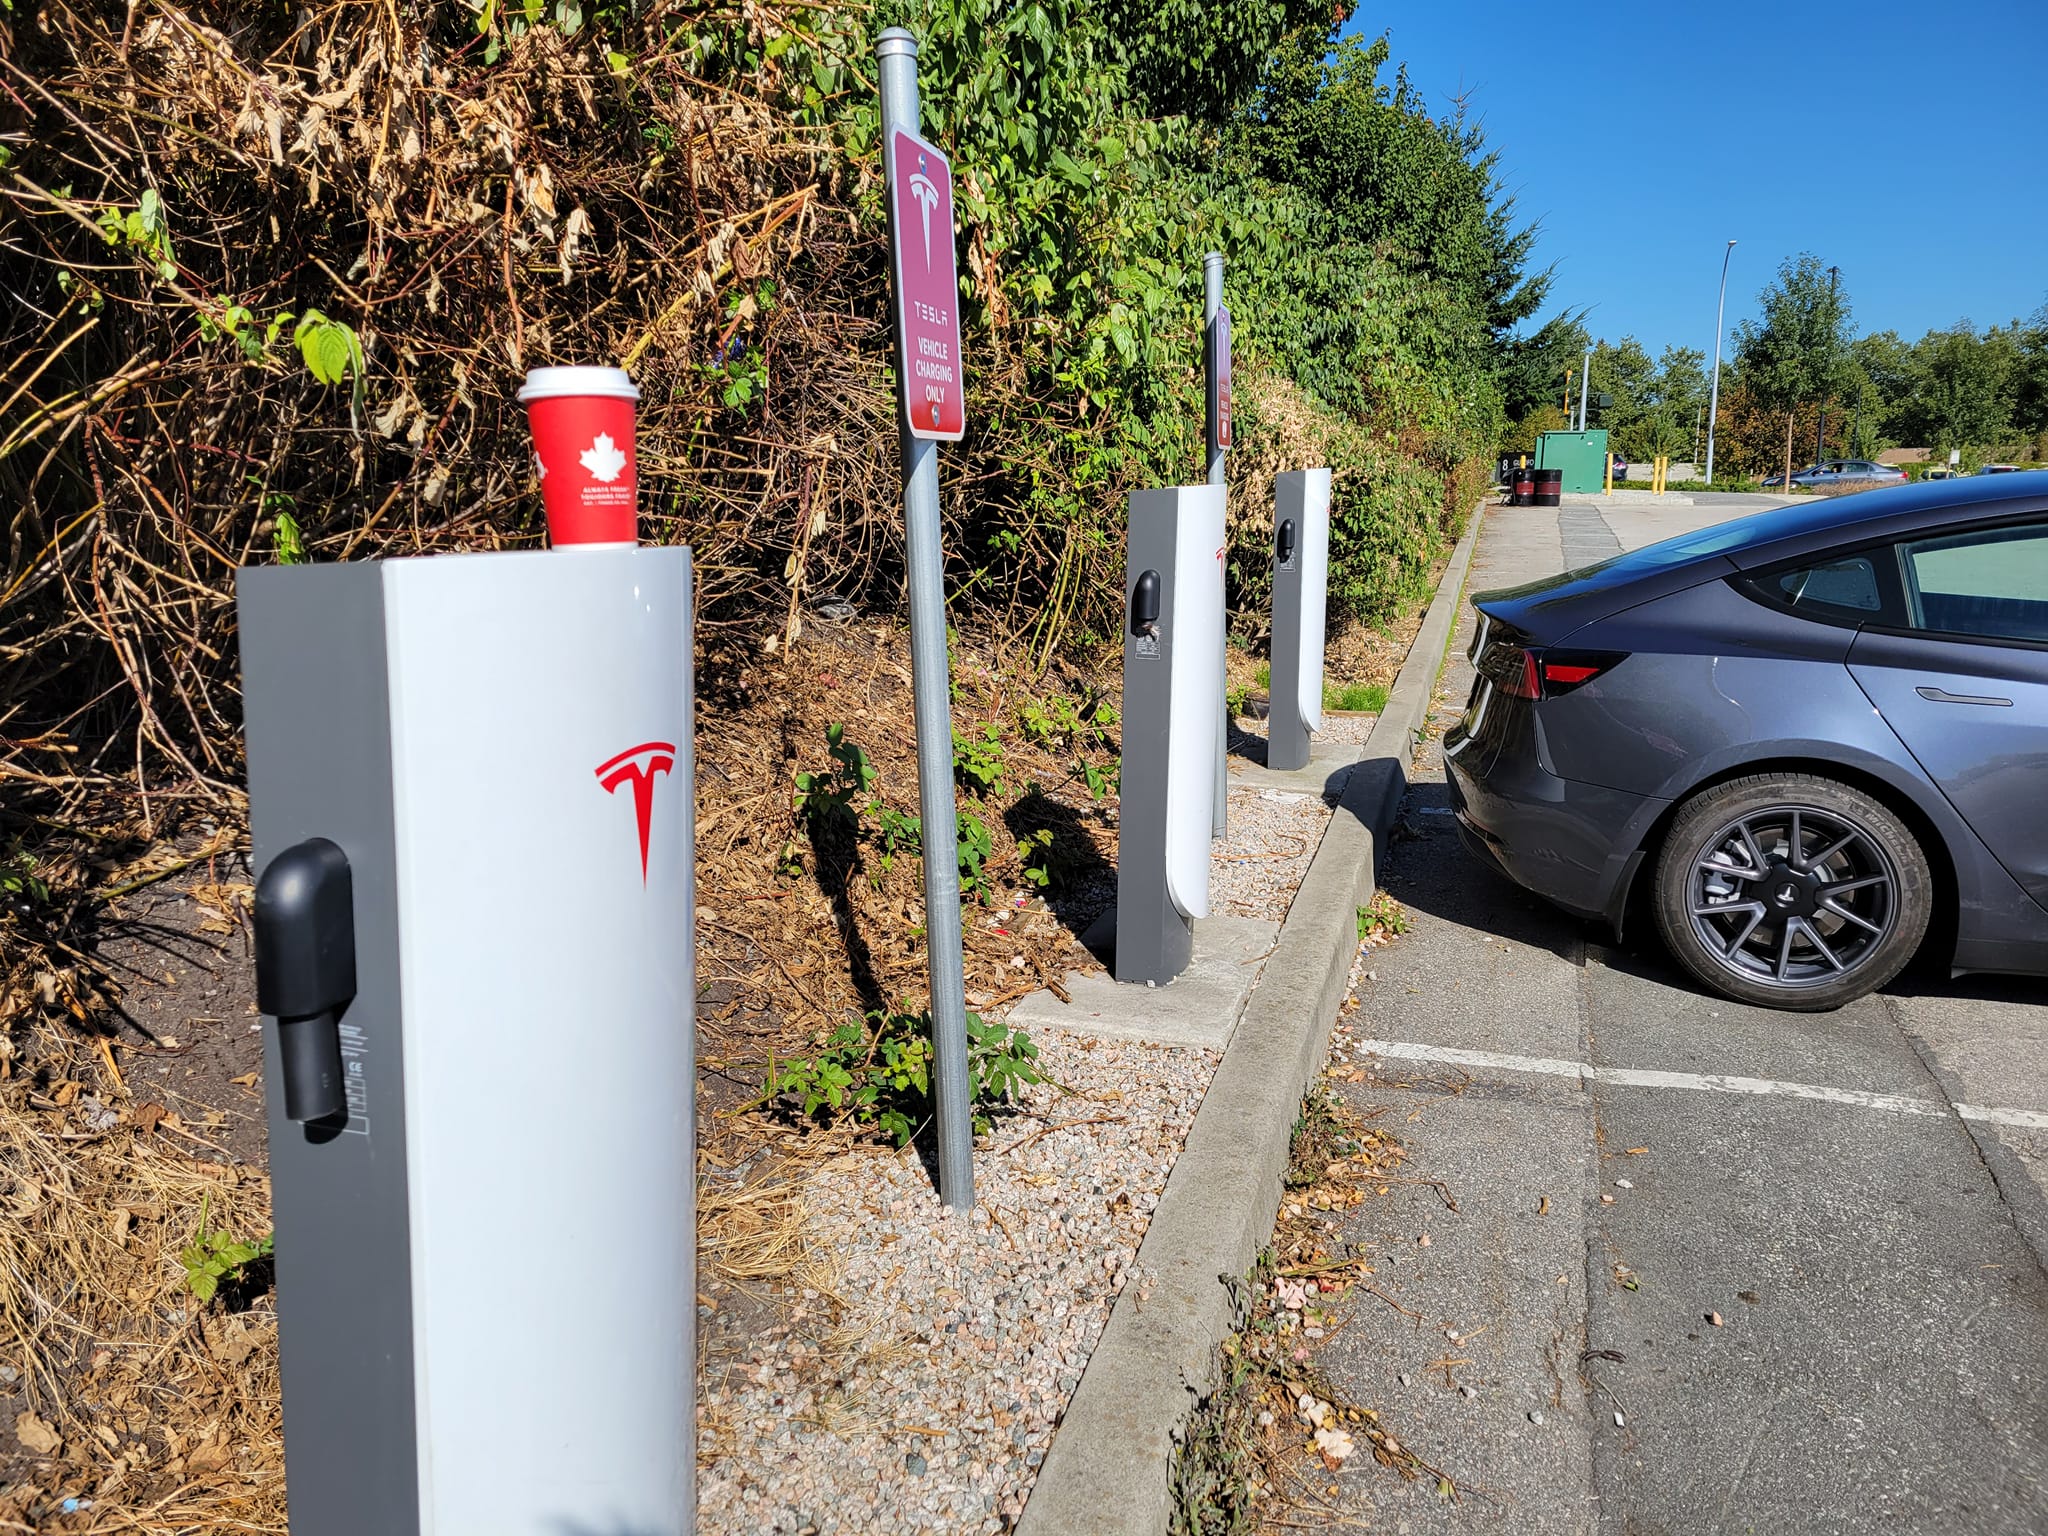 Tesla Supercharger-kabels doorgesneden in Surrey [Update]